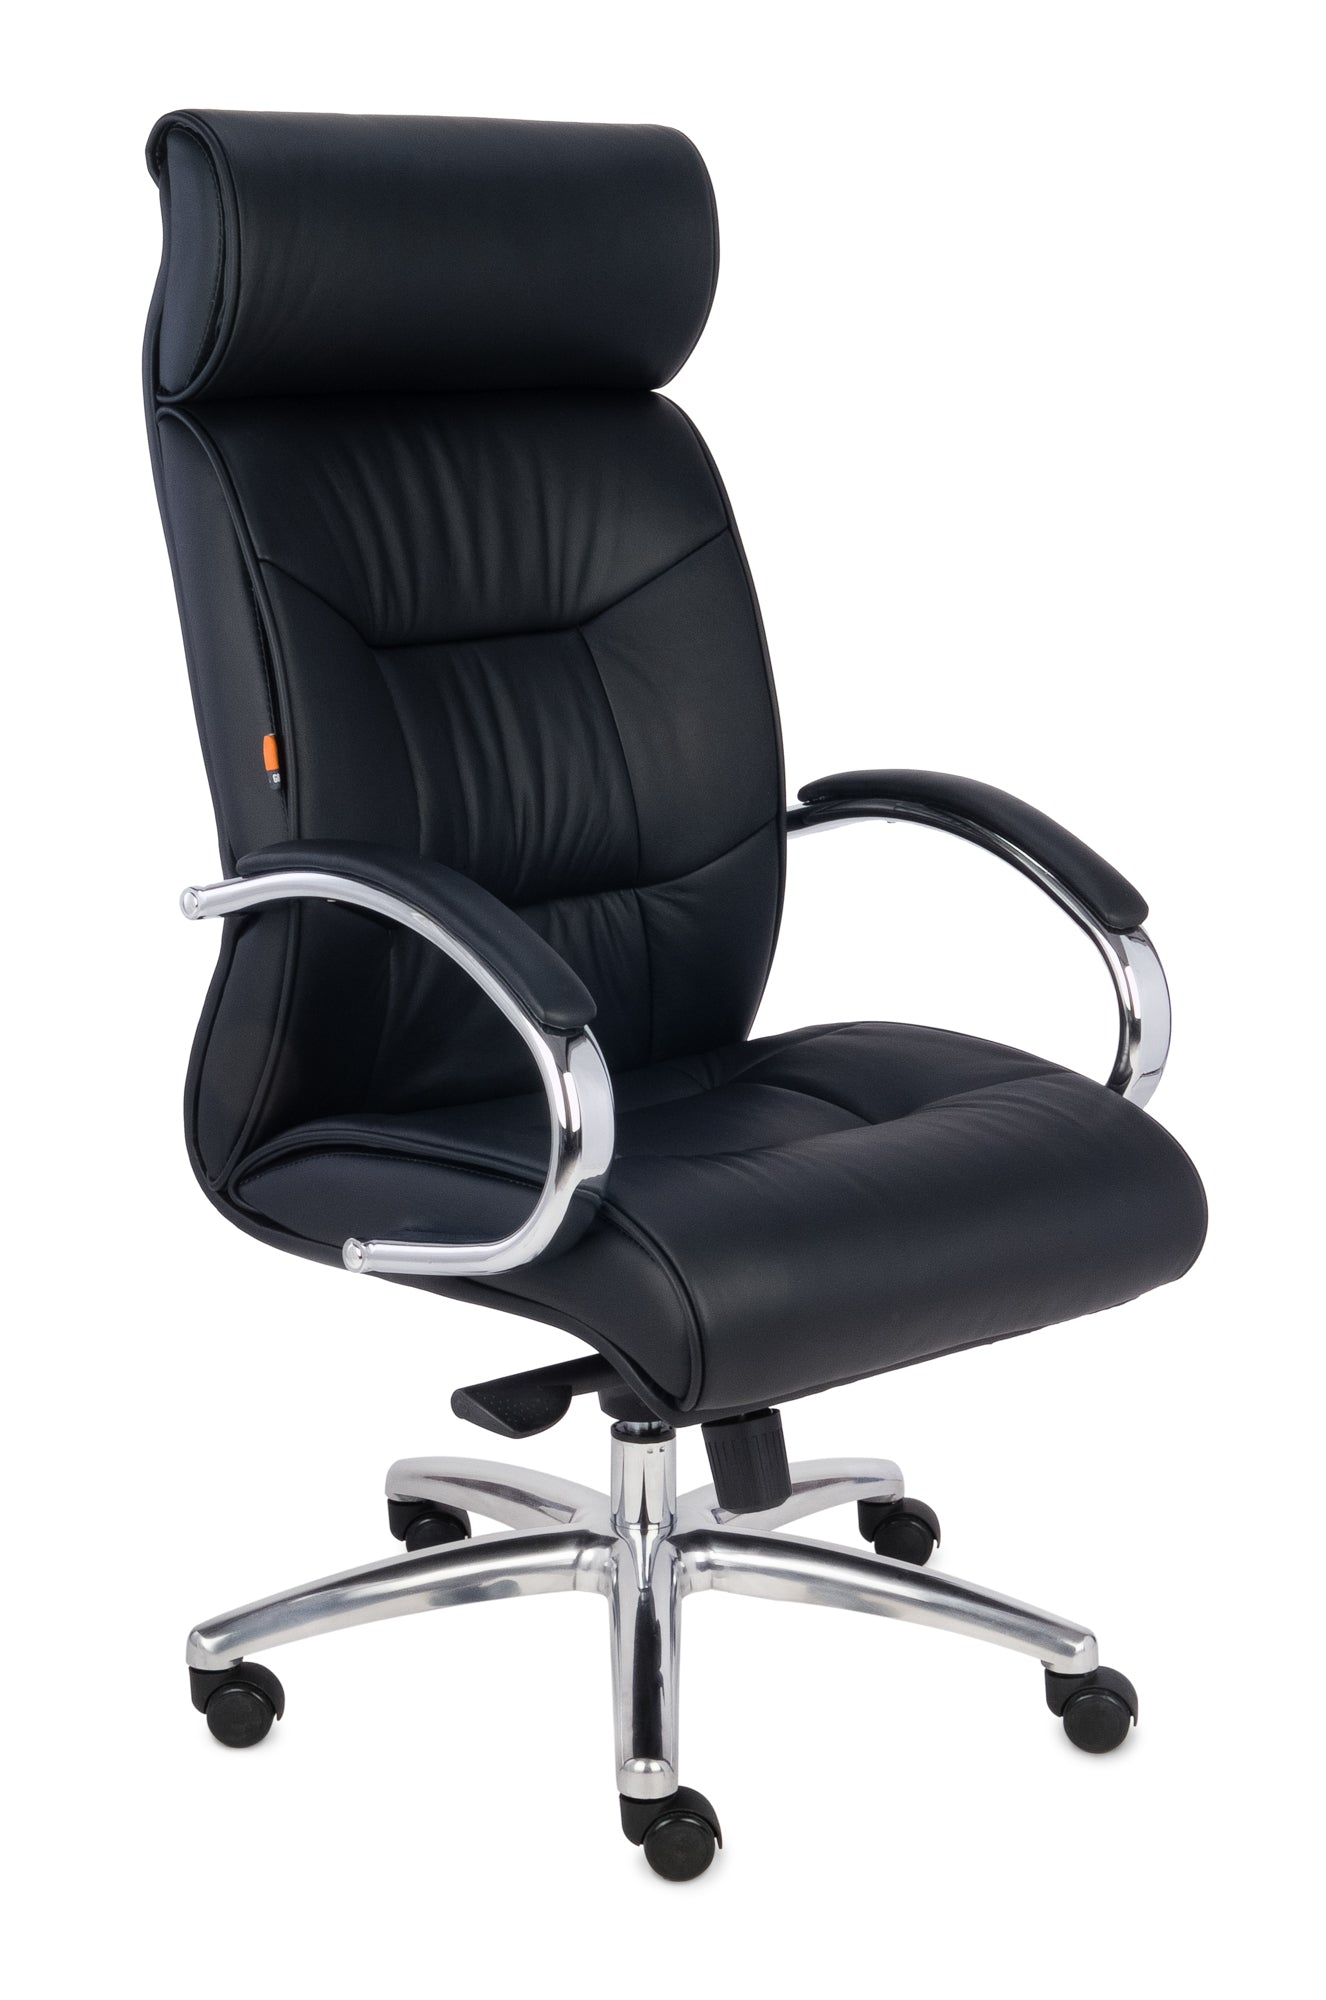 Biroja krēsls Supreme Chrome Leather - Ergostock.lv